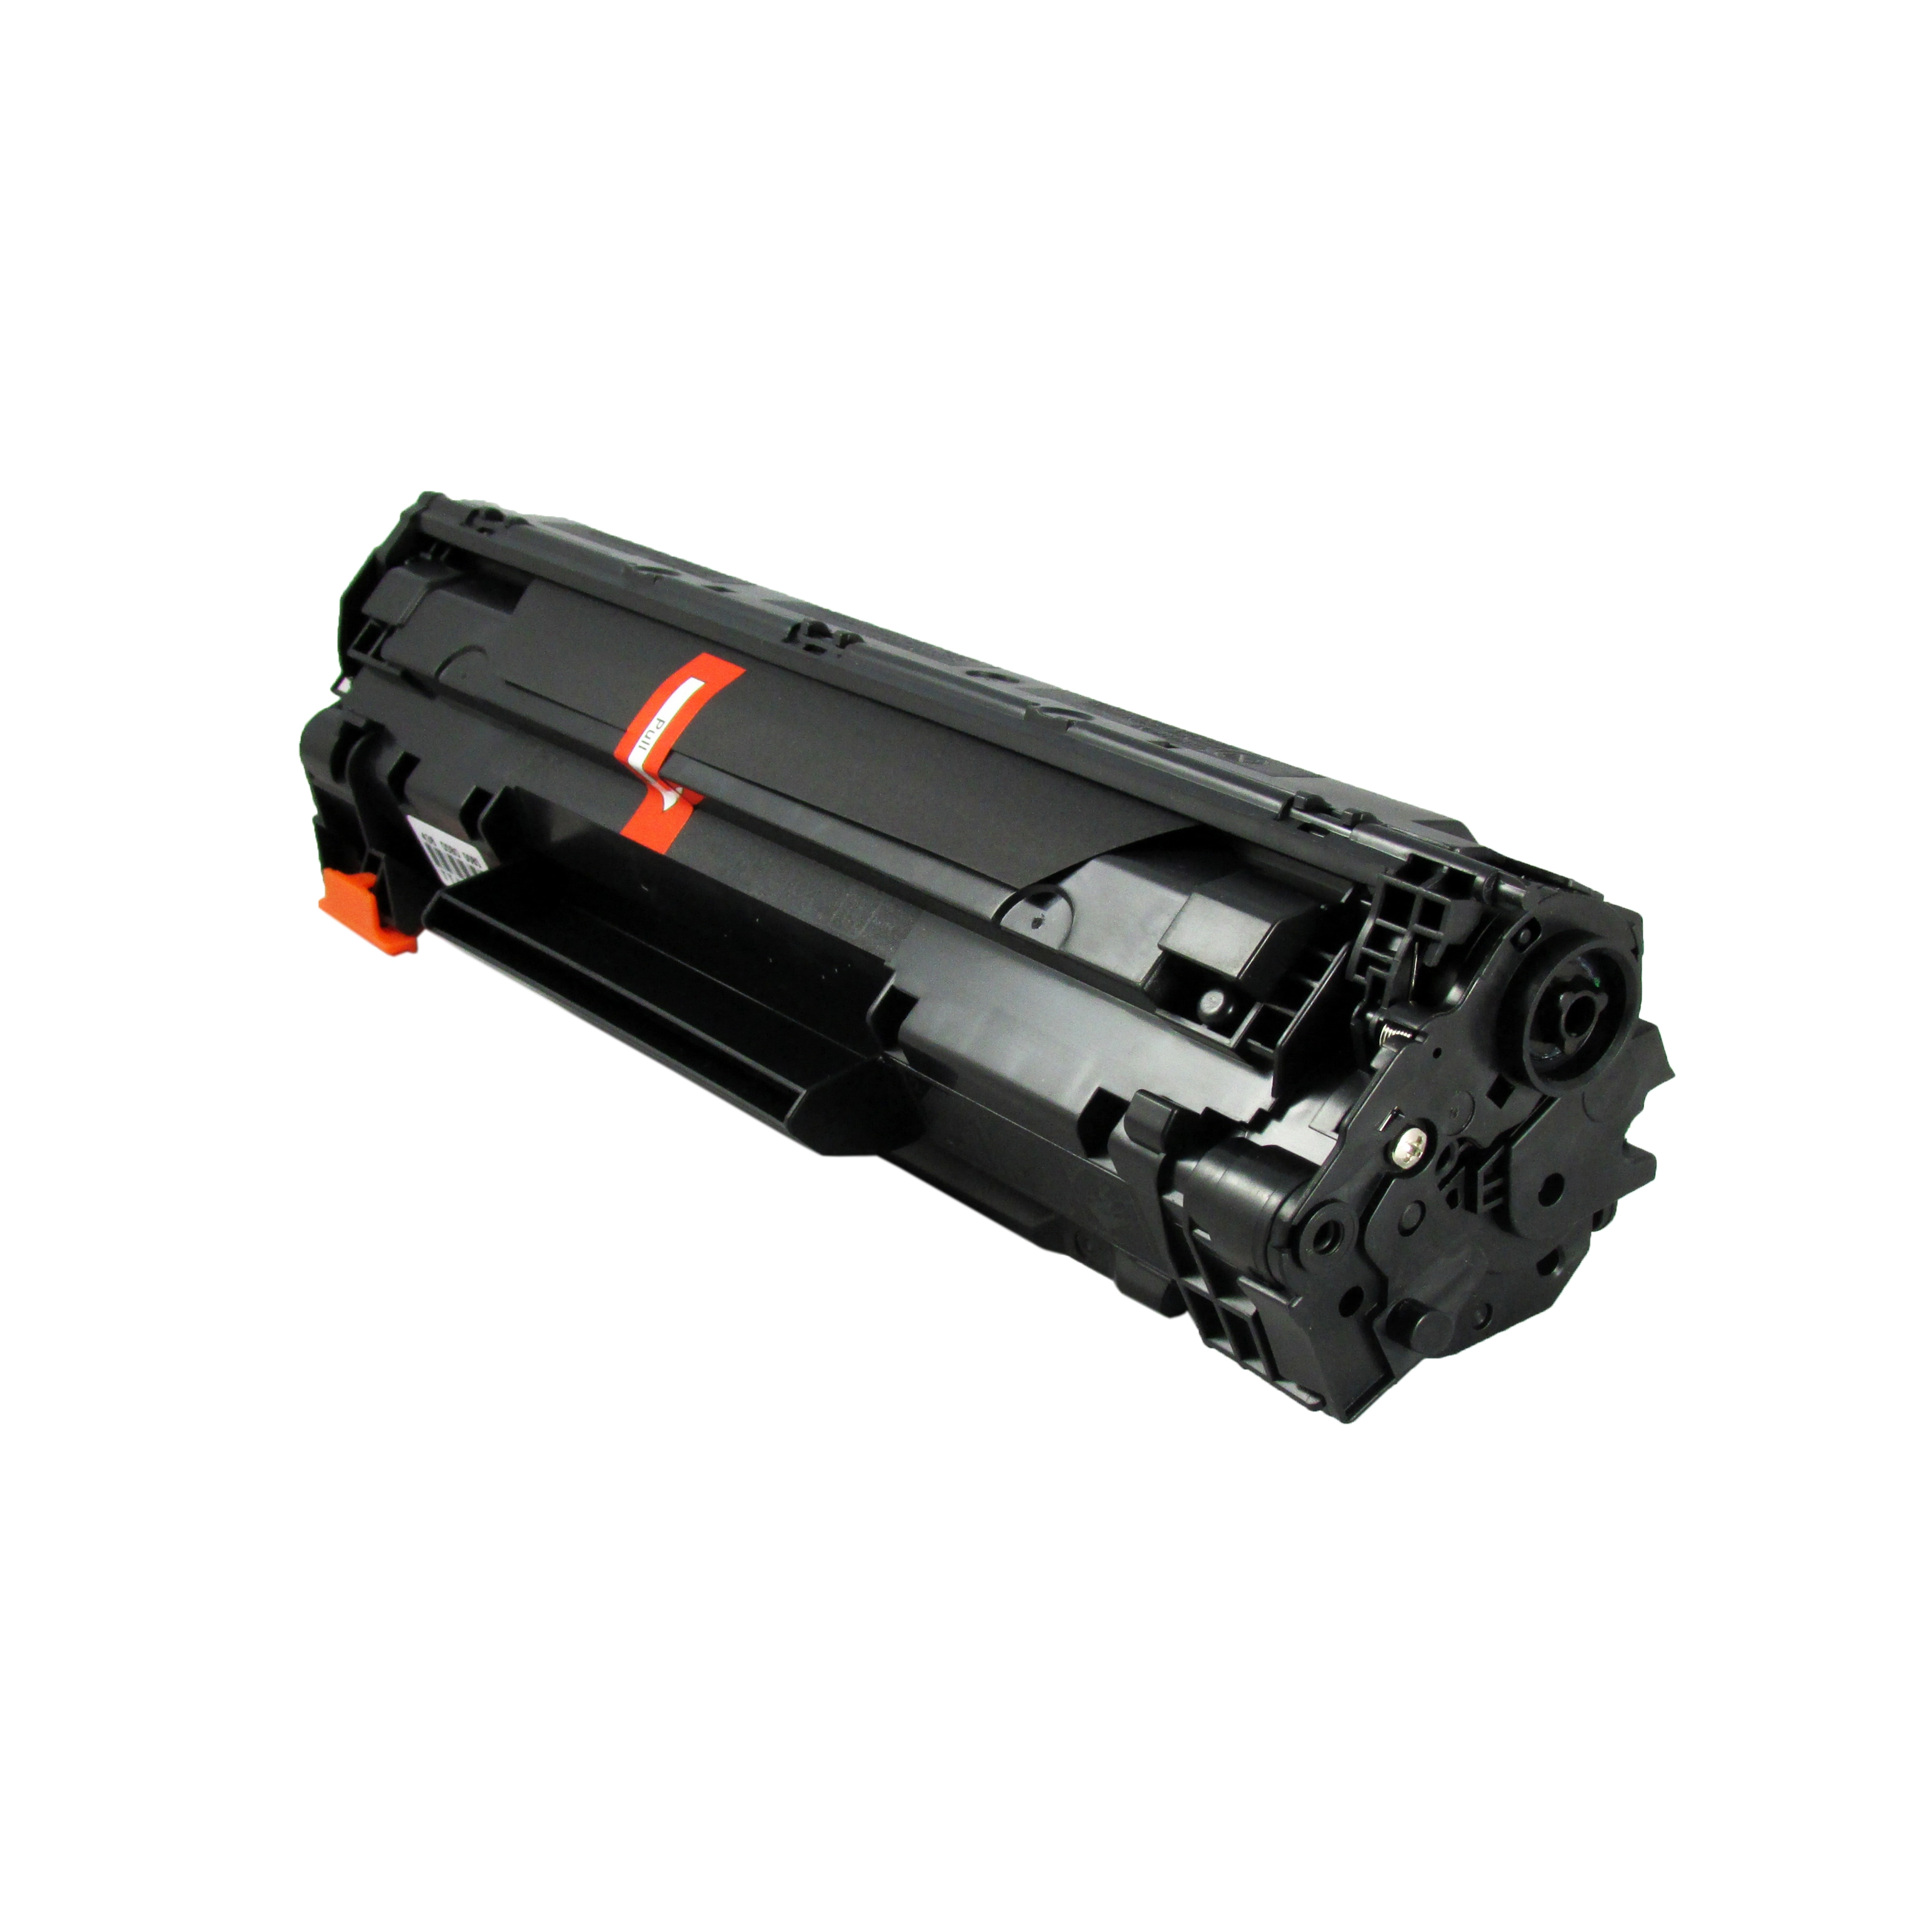 CB436 toner cartridge Use For P1500/P1505/1522/M1120/M1120N/M1522N/M1522F/P1505N